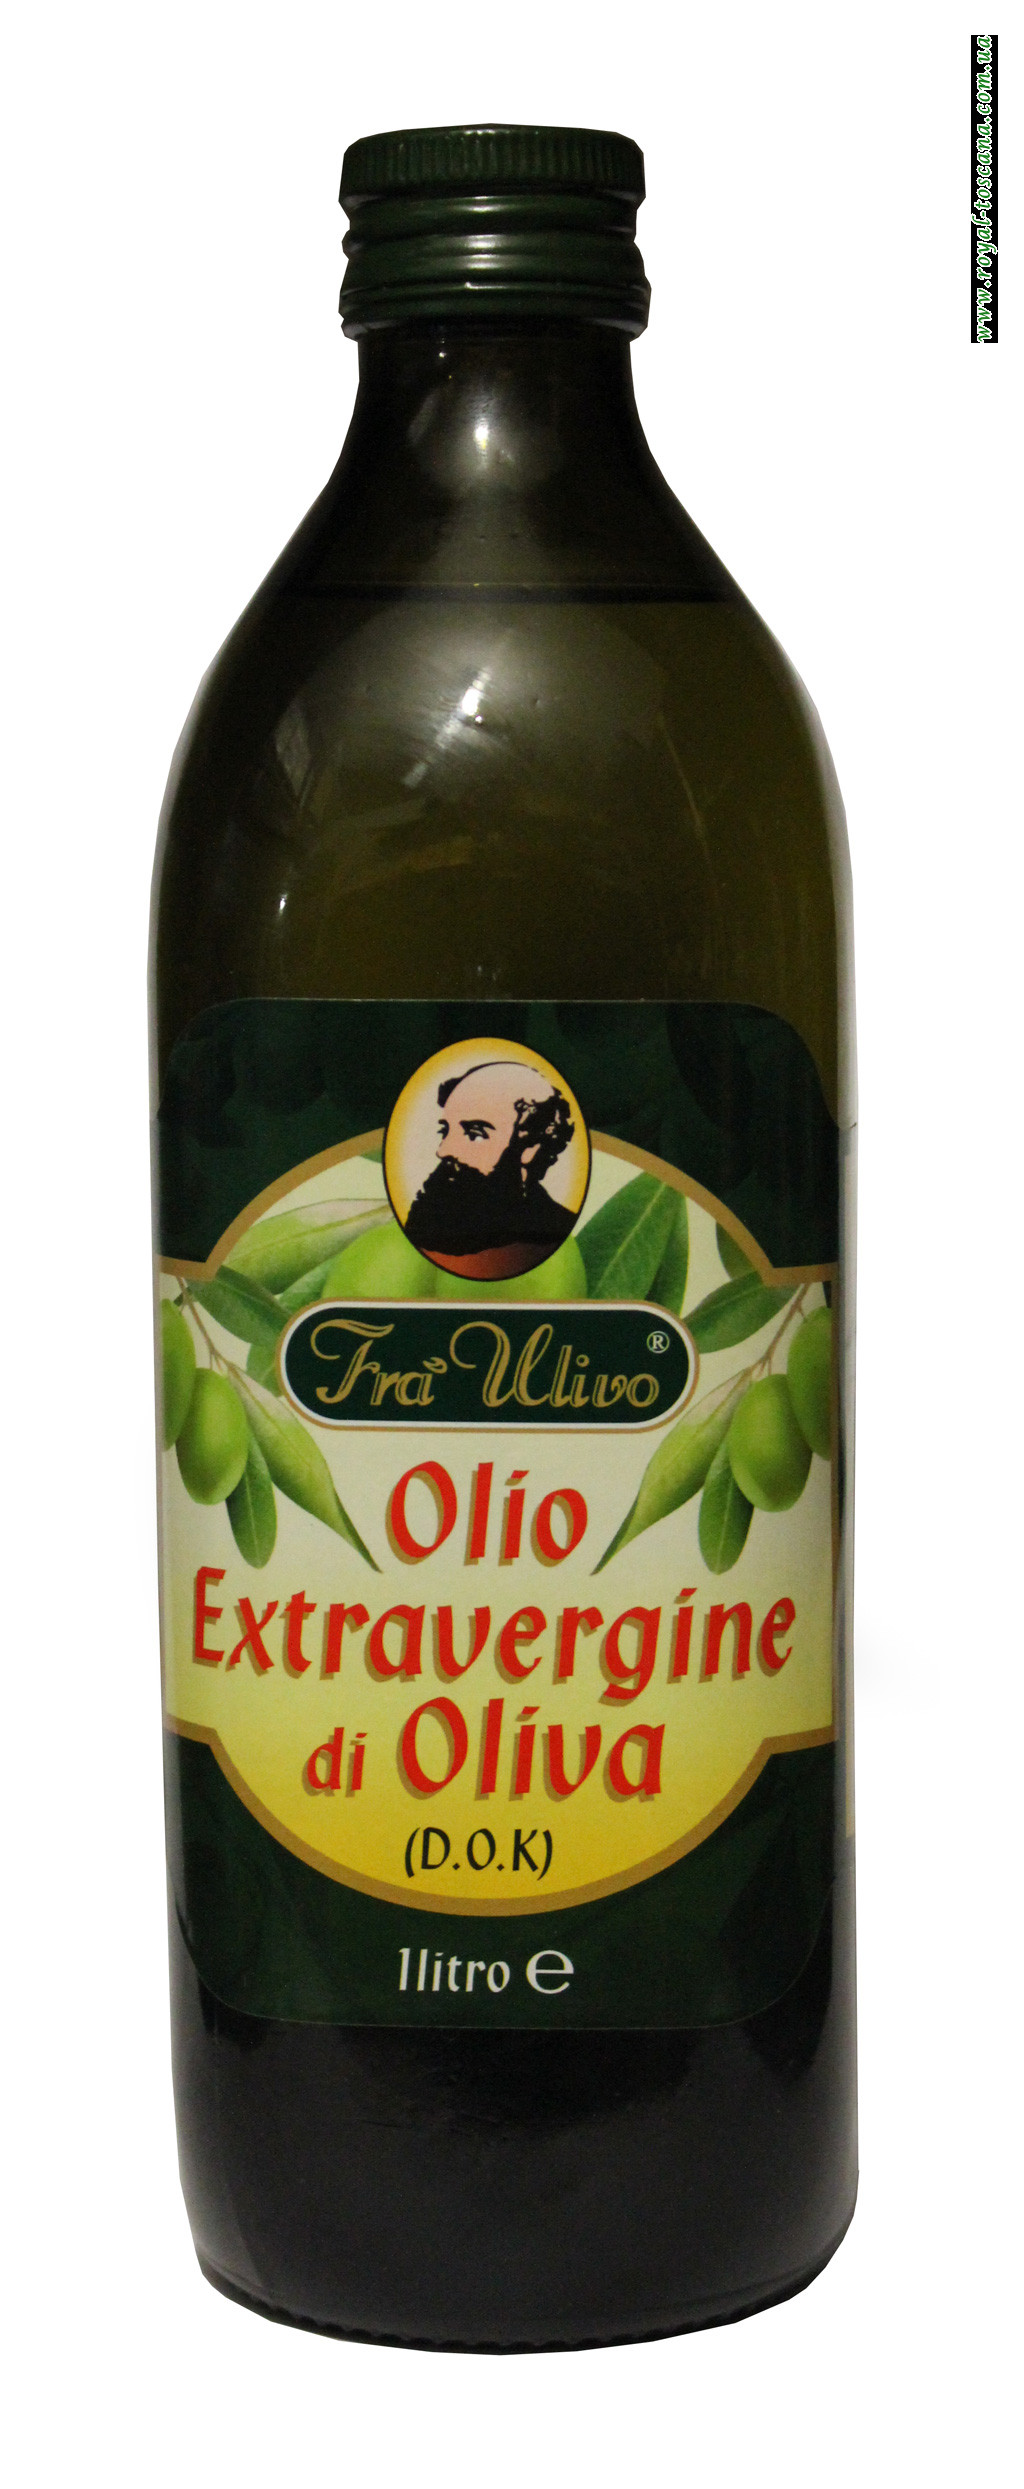 Оливковое масло Fra Ulivo Olio Extravergine di Oliva 